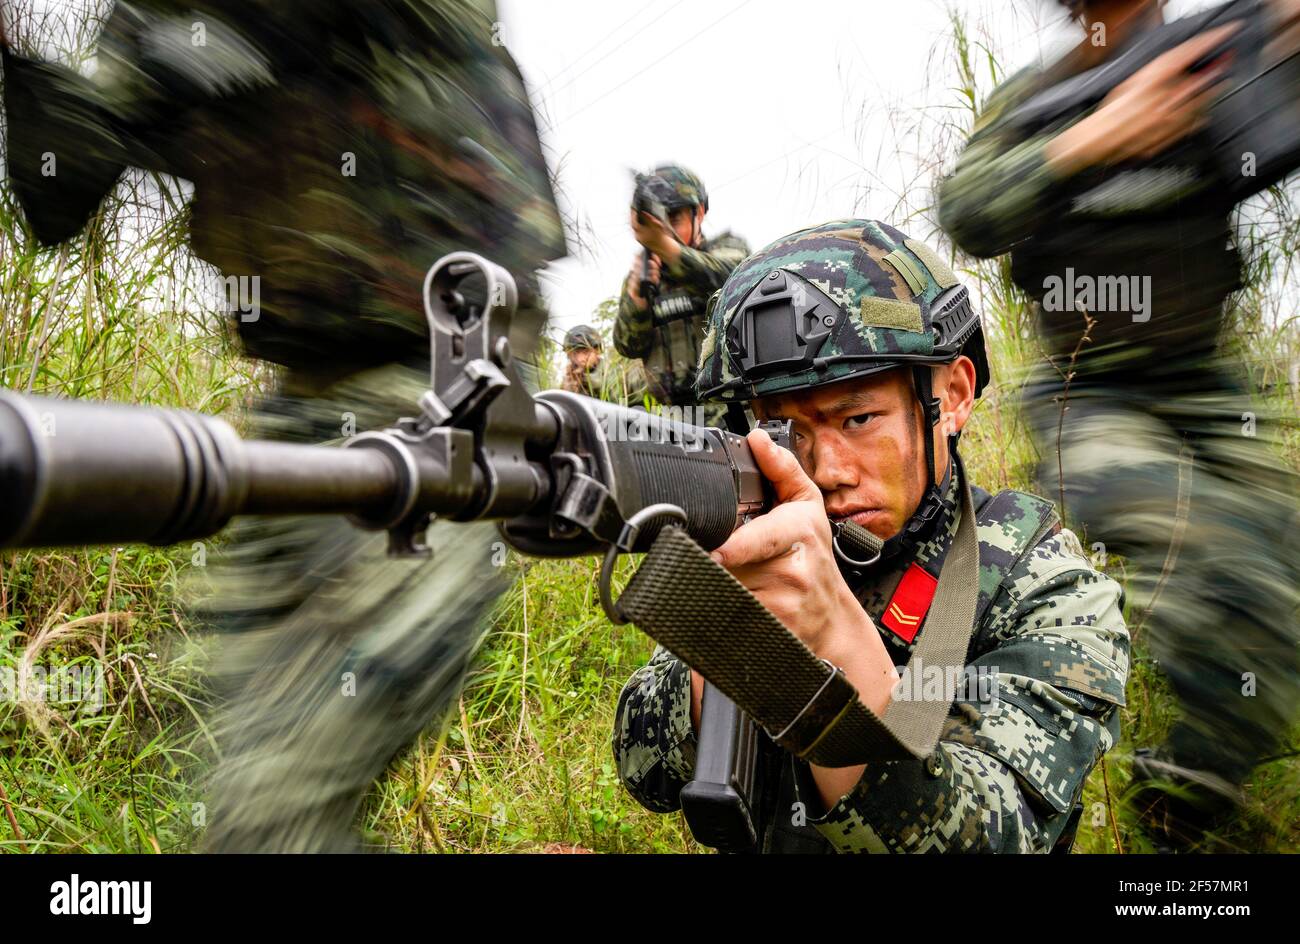 QINZHOU, CHINA - 24 DE MARZO de 2021 - un campo de entrenamiento antiterrorista de la policía armada en Qinzhou, Región Autónoma de Guangxi Zhuang, China, 24 de marzo de 2021. (Foto de Chai Hao / Costfoto/Sipa USA) crédito: SIPA USA/Alamy Live News Foto de stock